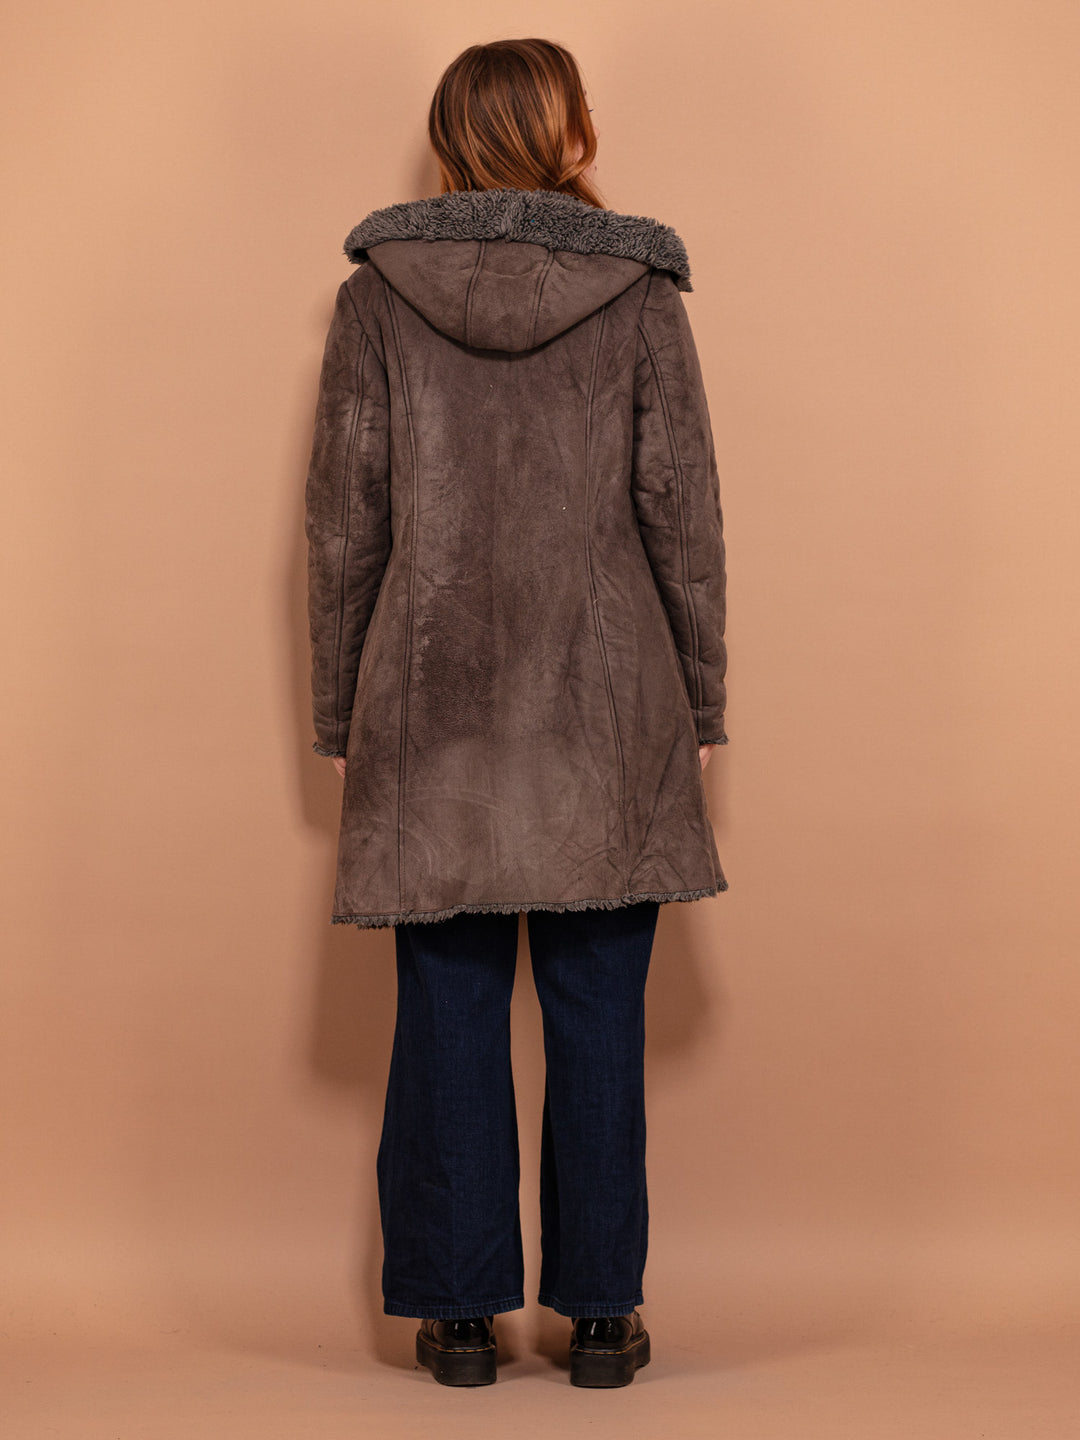 Hooded Winter Coat 00's, Size M Medium, Y2K Faux Sheepskin Coat, Gray Sherpa Lined Coat, Longline Jacket, Women Zip Up Coat, 2000's Clothing